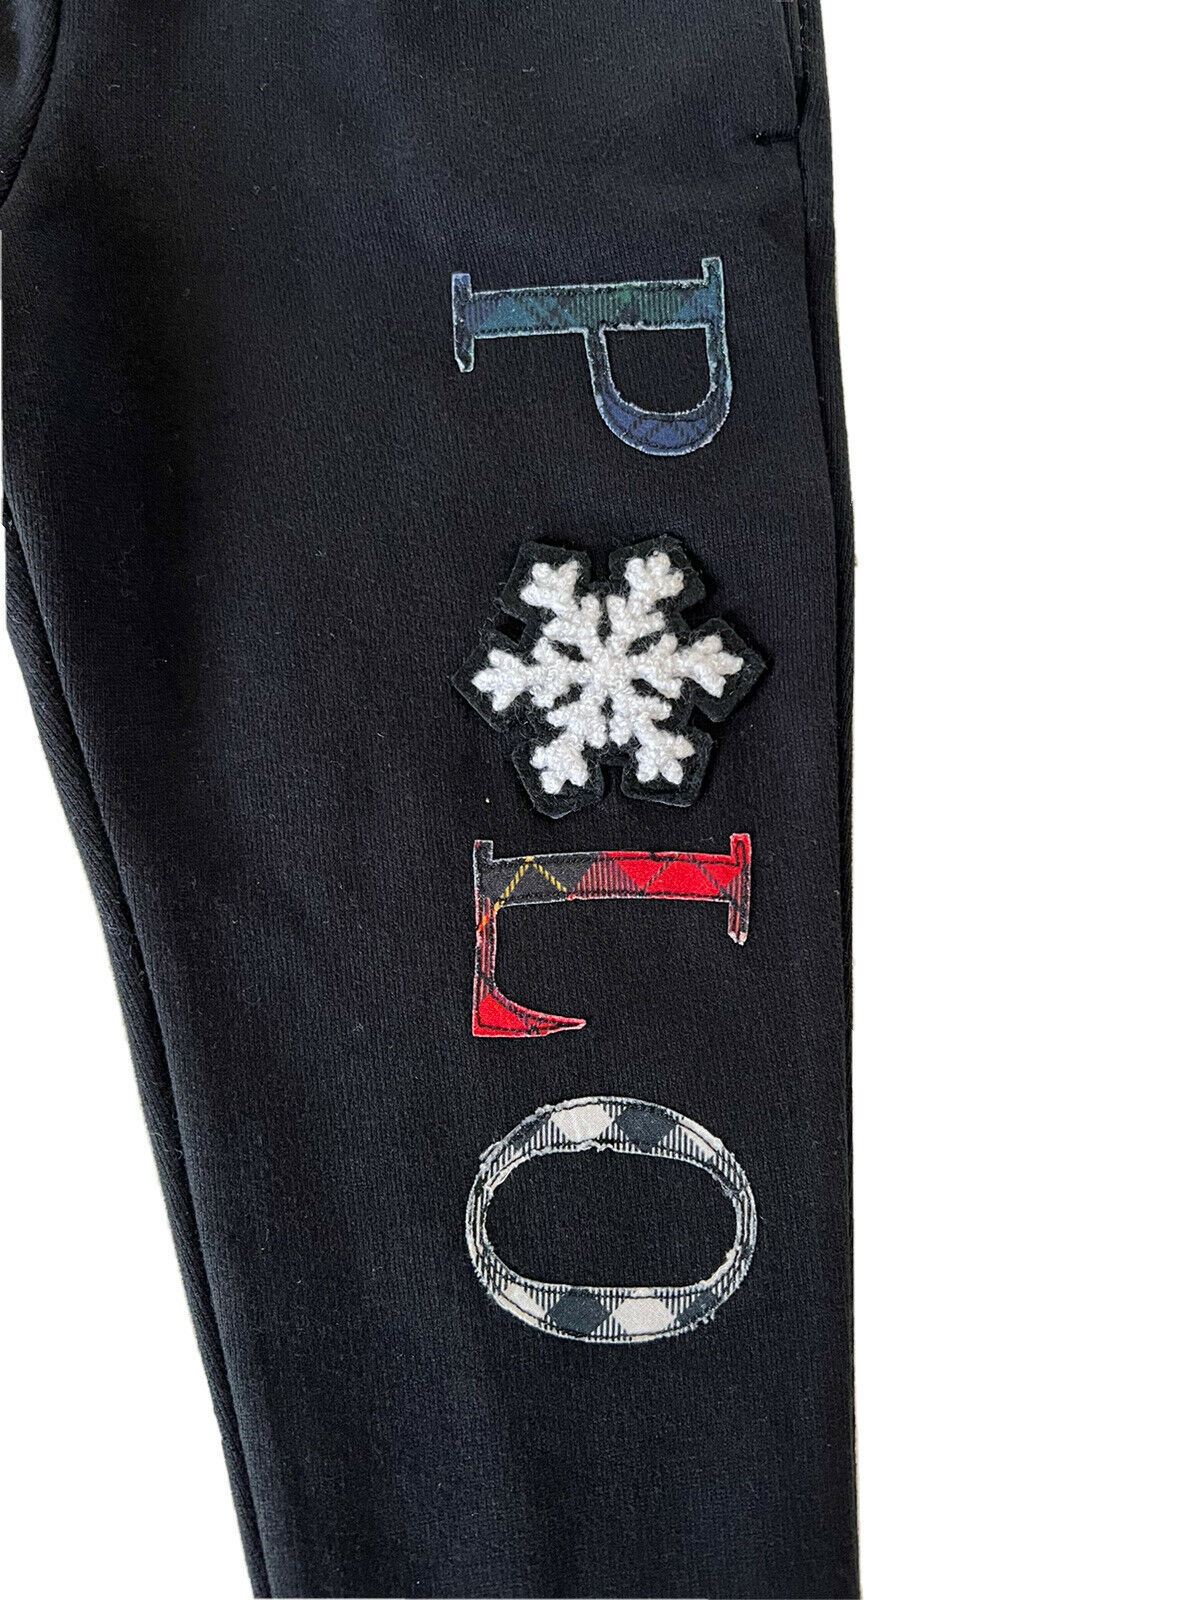 Neu mit Etikett: Polo Ralph Lauren Jungen-Freizeithose 6 in Schwarz mit Schneeflockenmuster, hergestellt in Indien